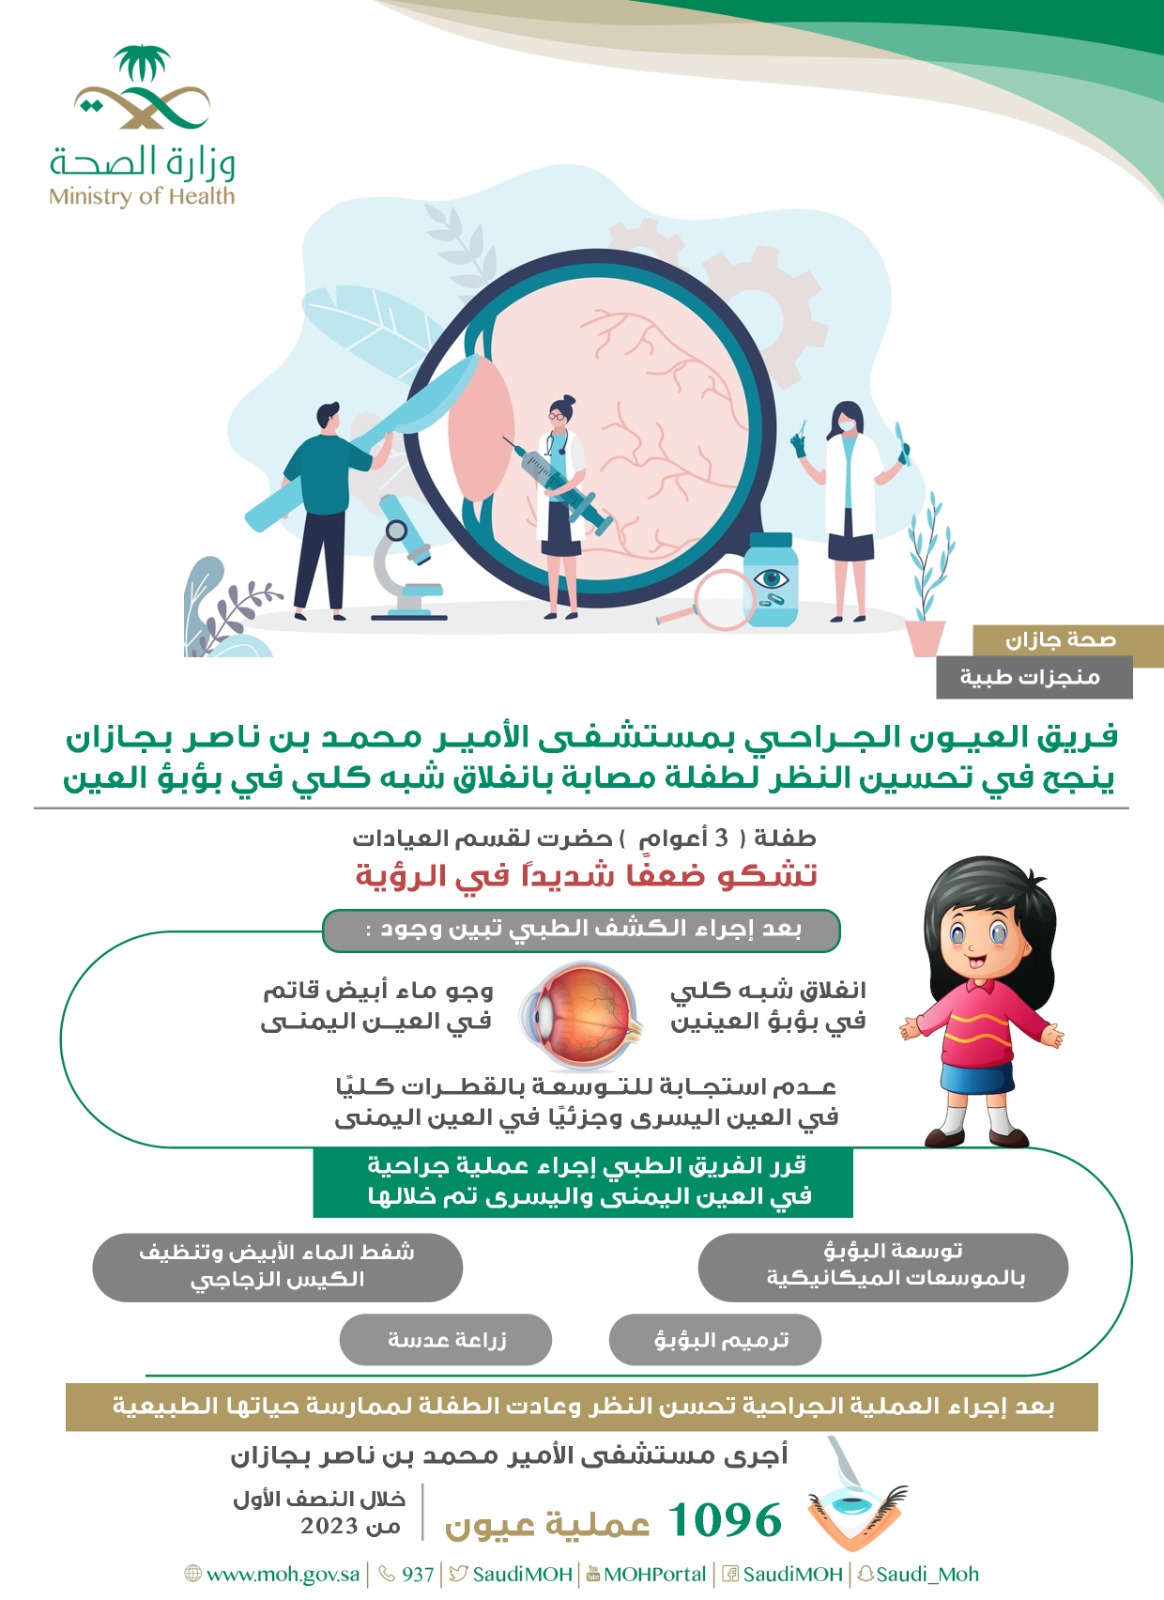 فريق العيون الجراحي بمستشفى الأمير محمد بن ناصر بجازان ينجح في تحسين النظر لطفلة